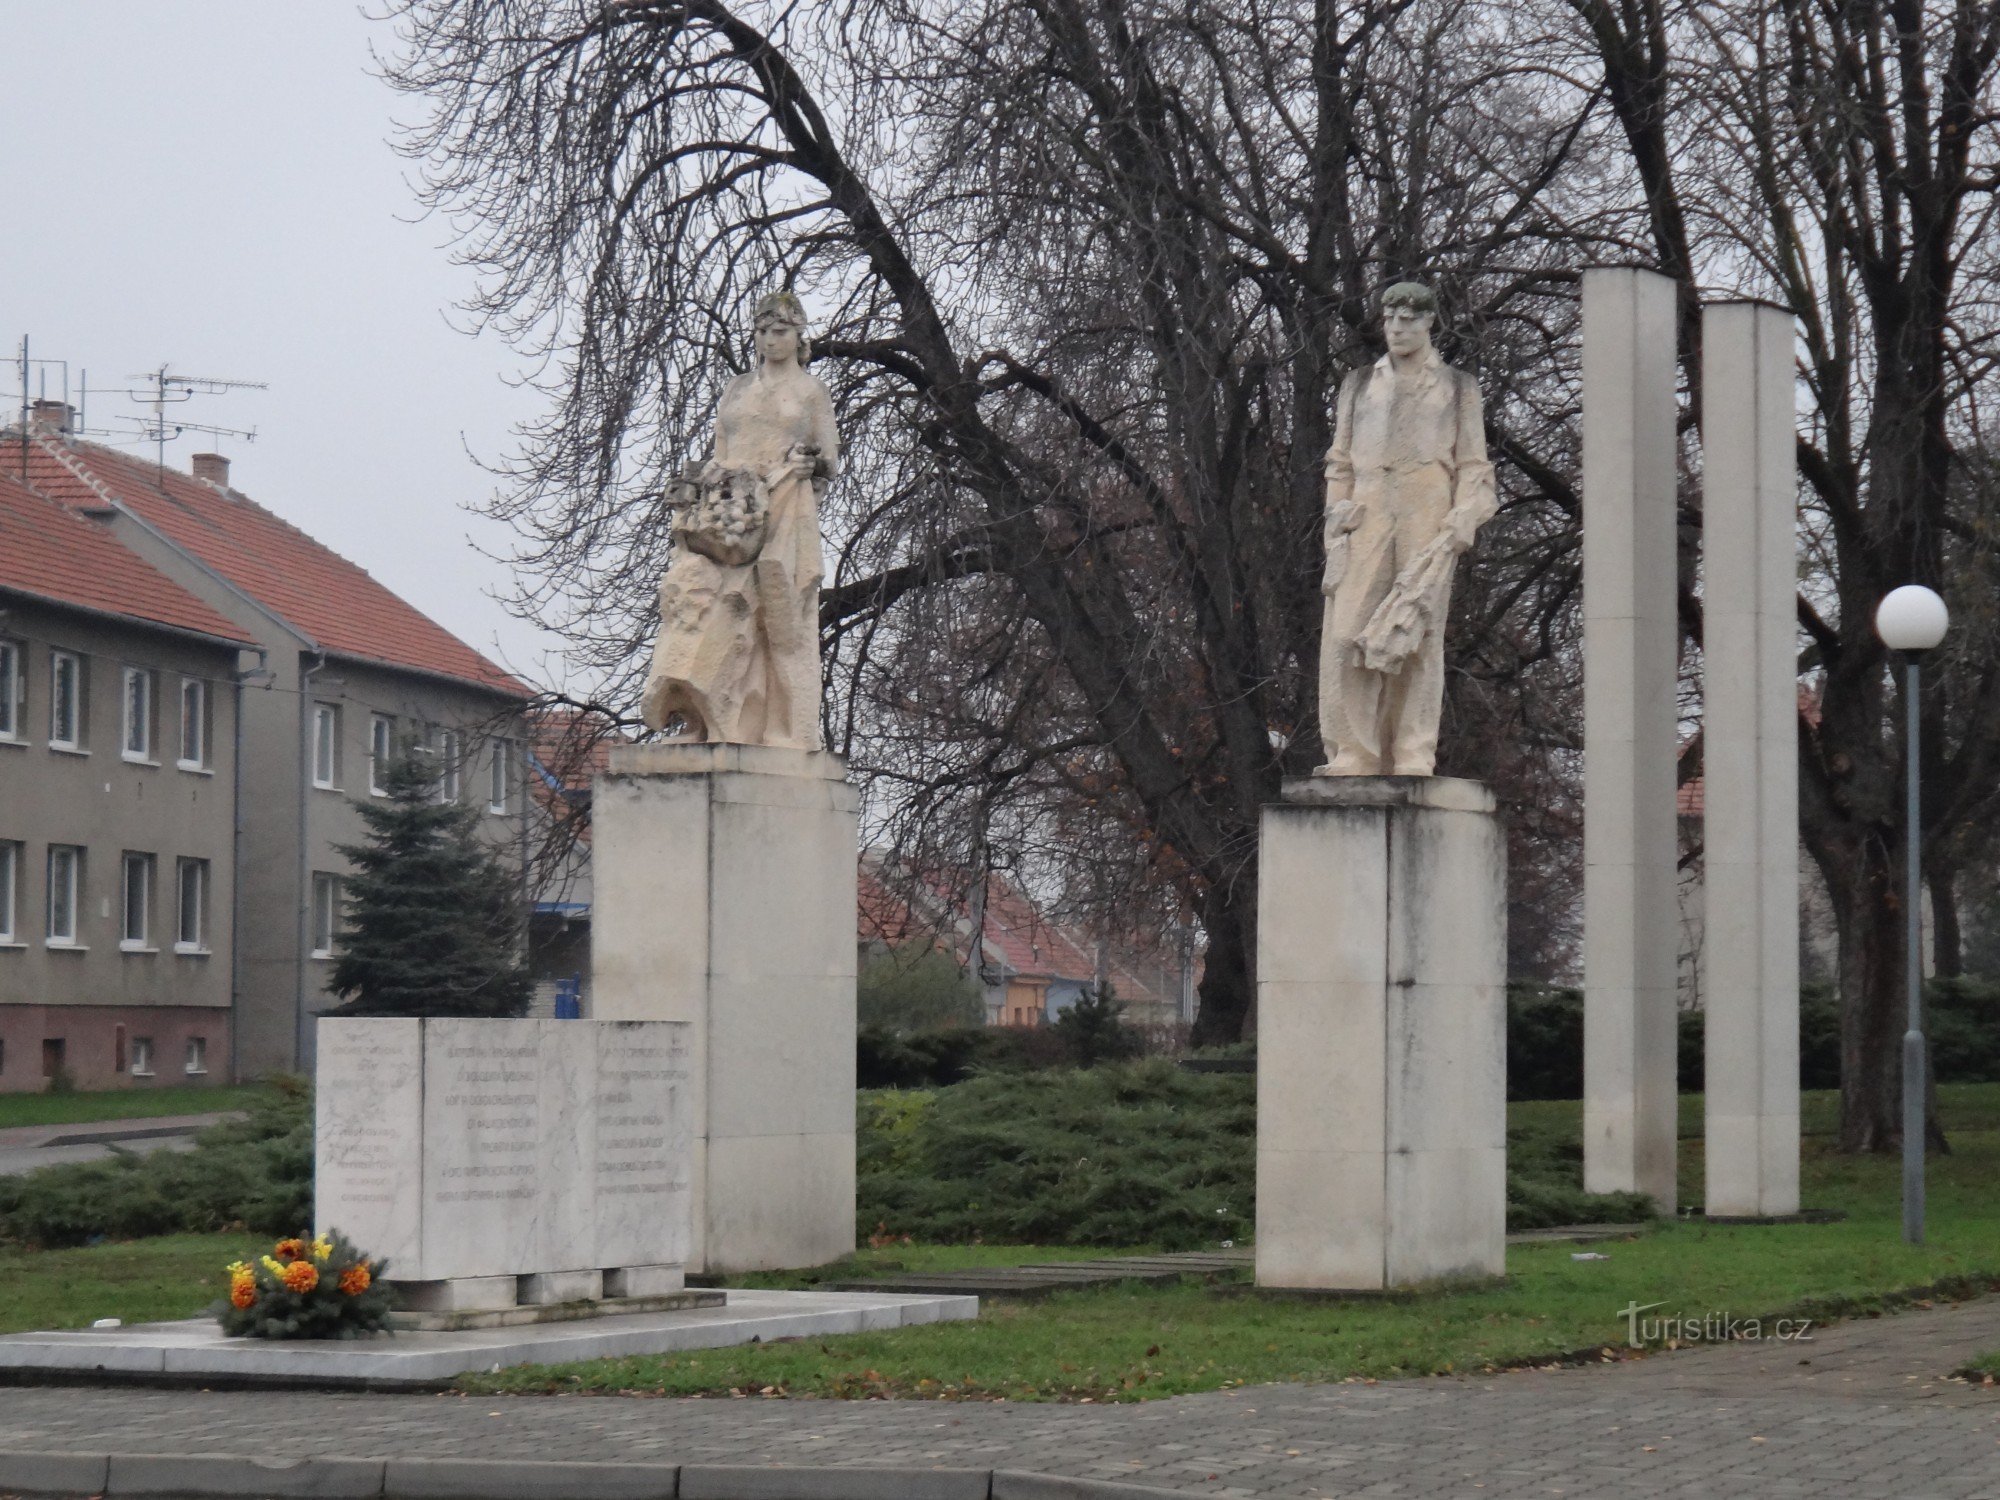 Đài tưởng niệm giải phóng pháo đài